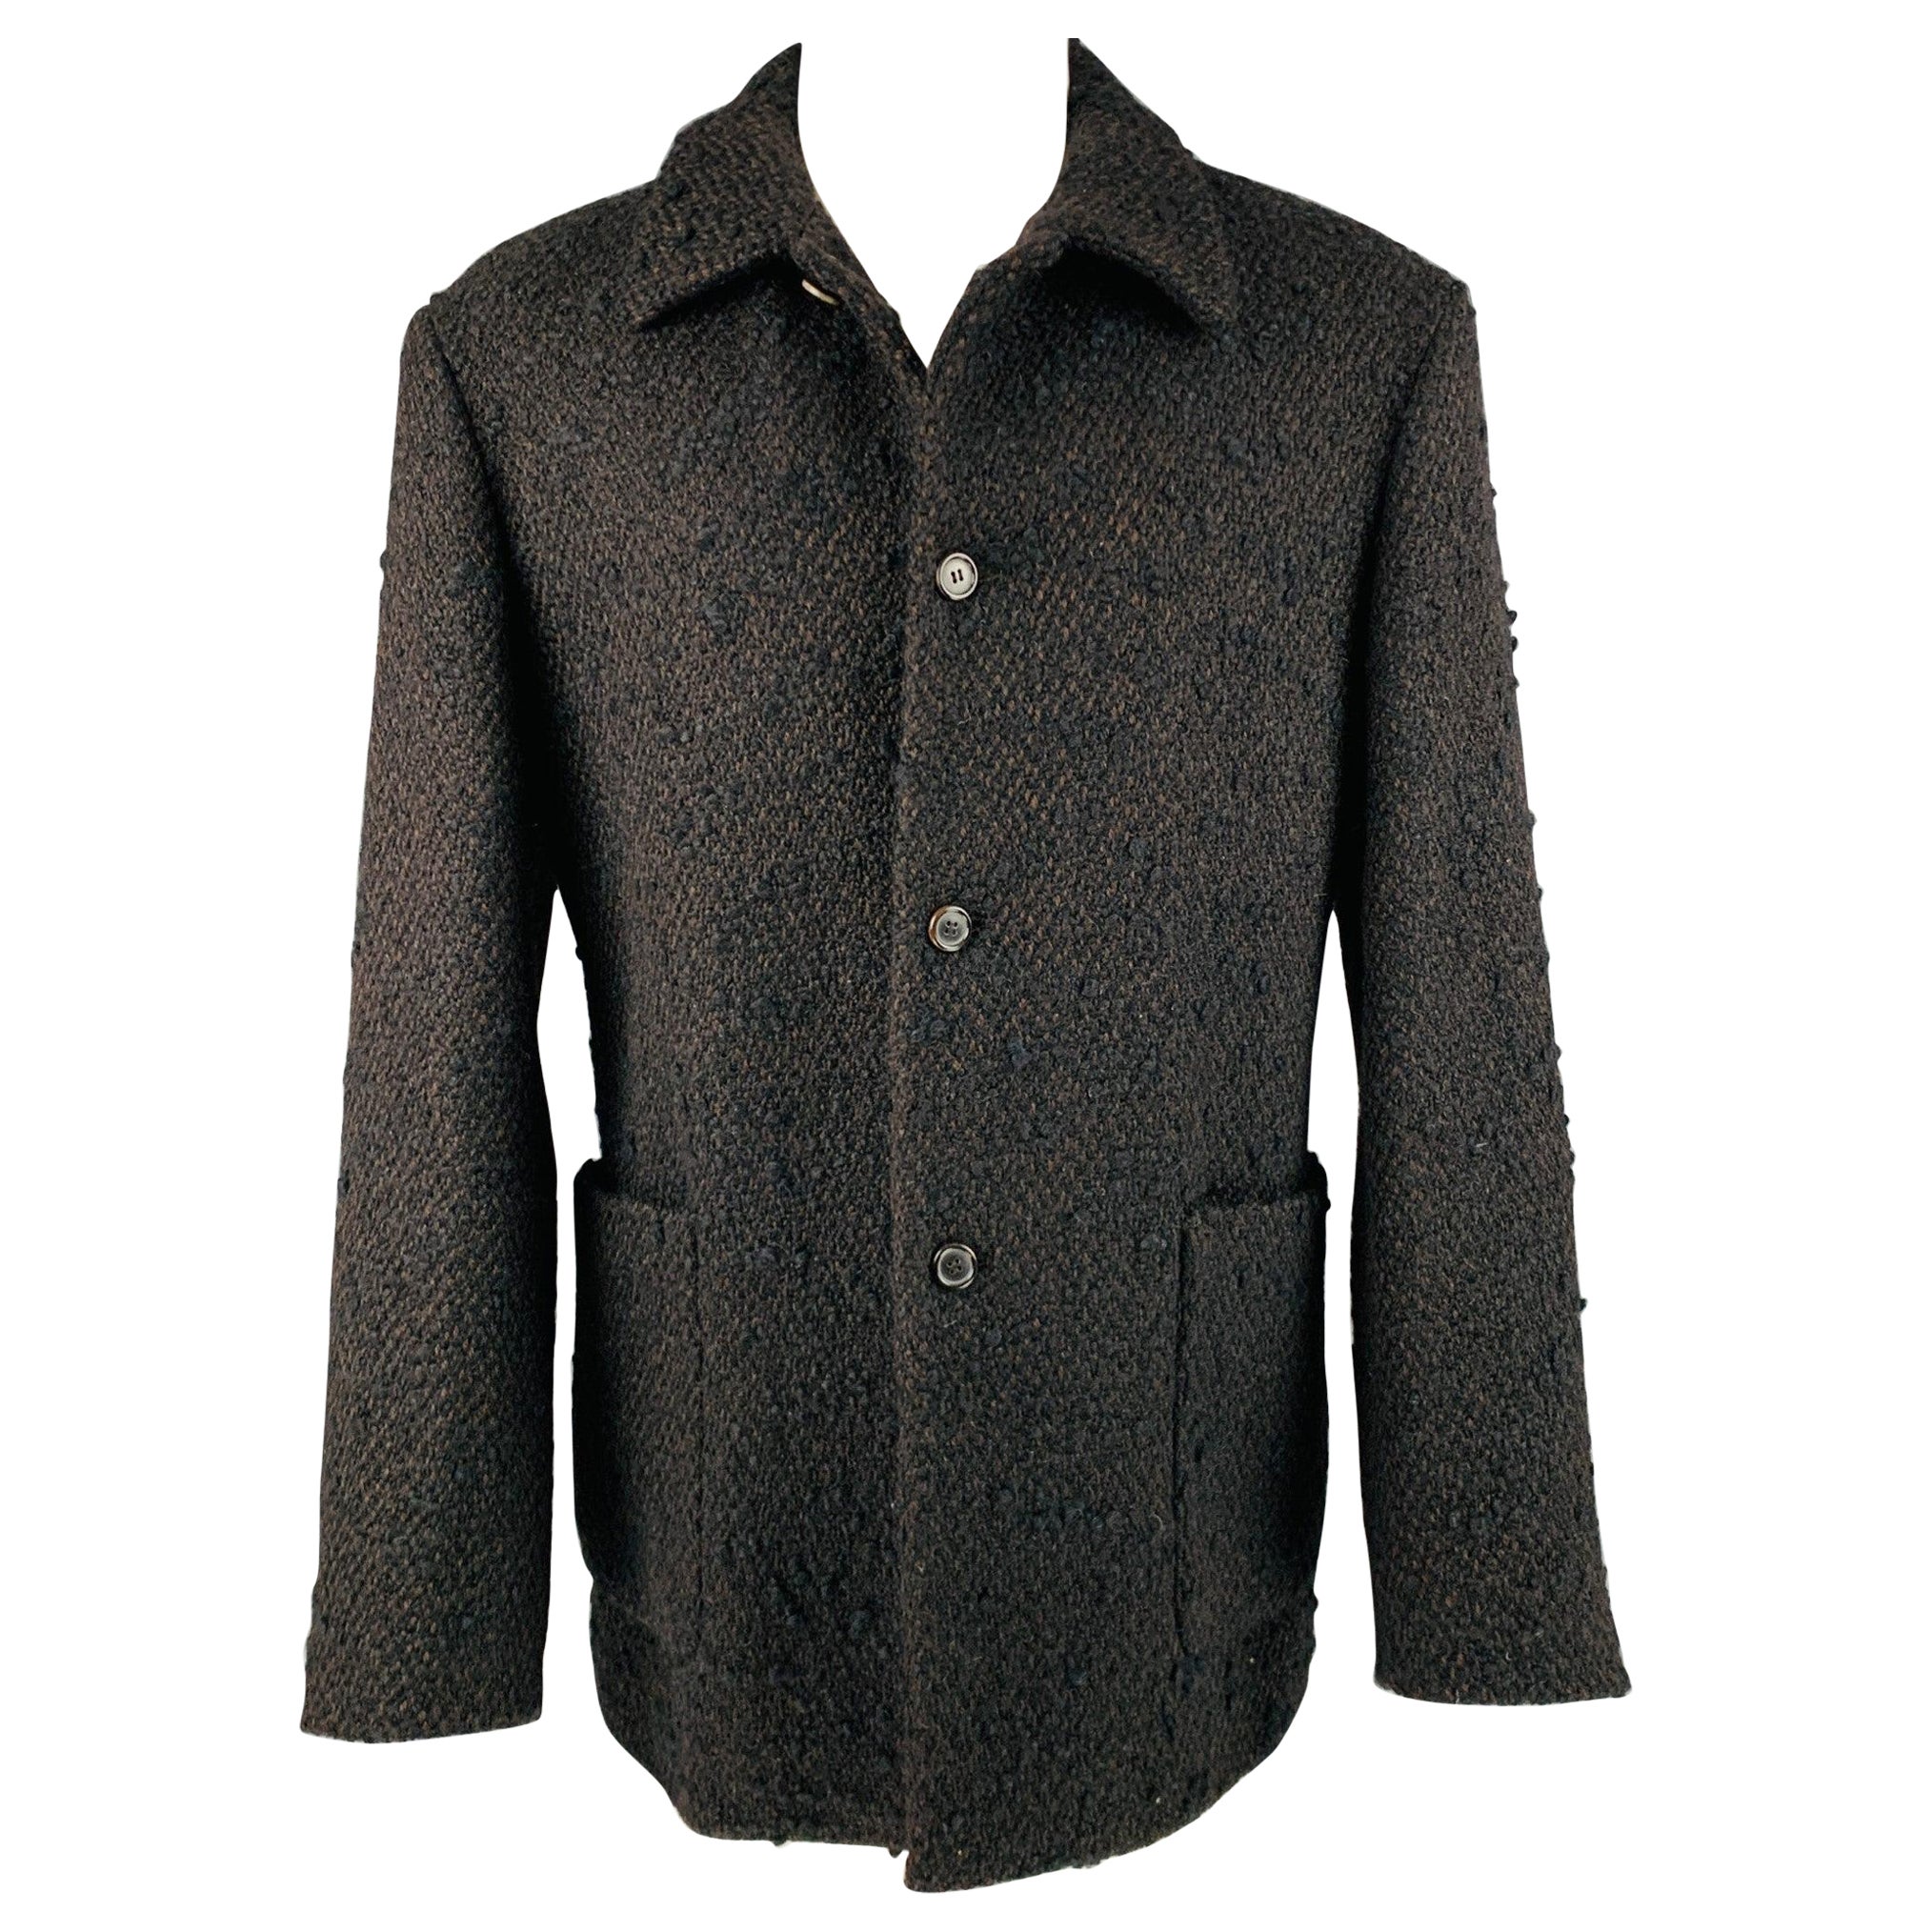 PRADA Size 40 Black Brown Tweed Wool Blend Patch Pockets Jacket